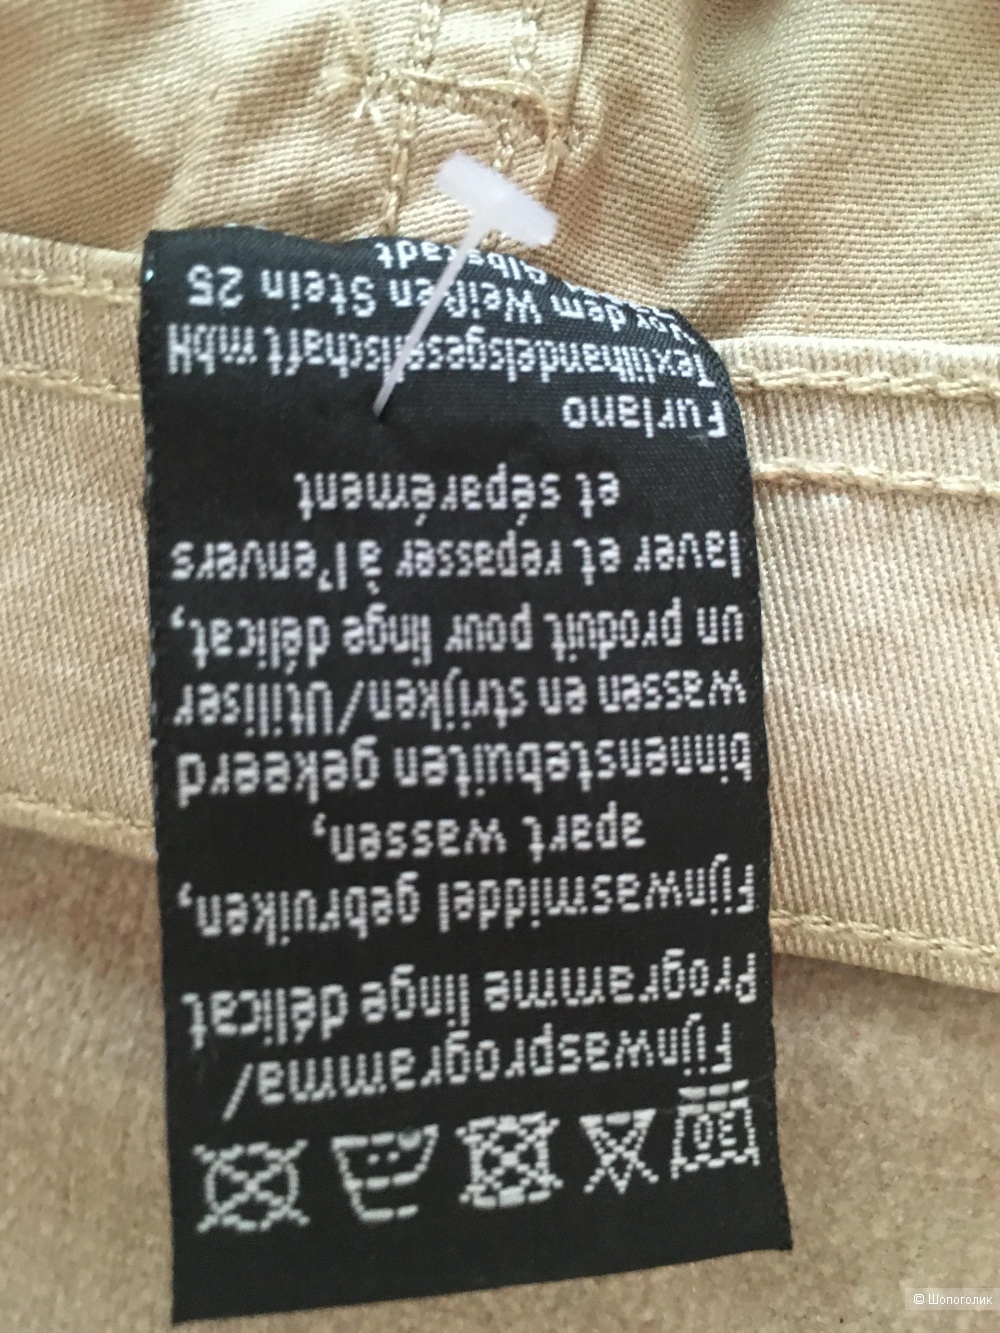 Металлизированные джинсы Mar Collection размер 46